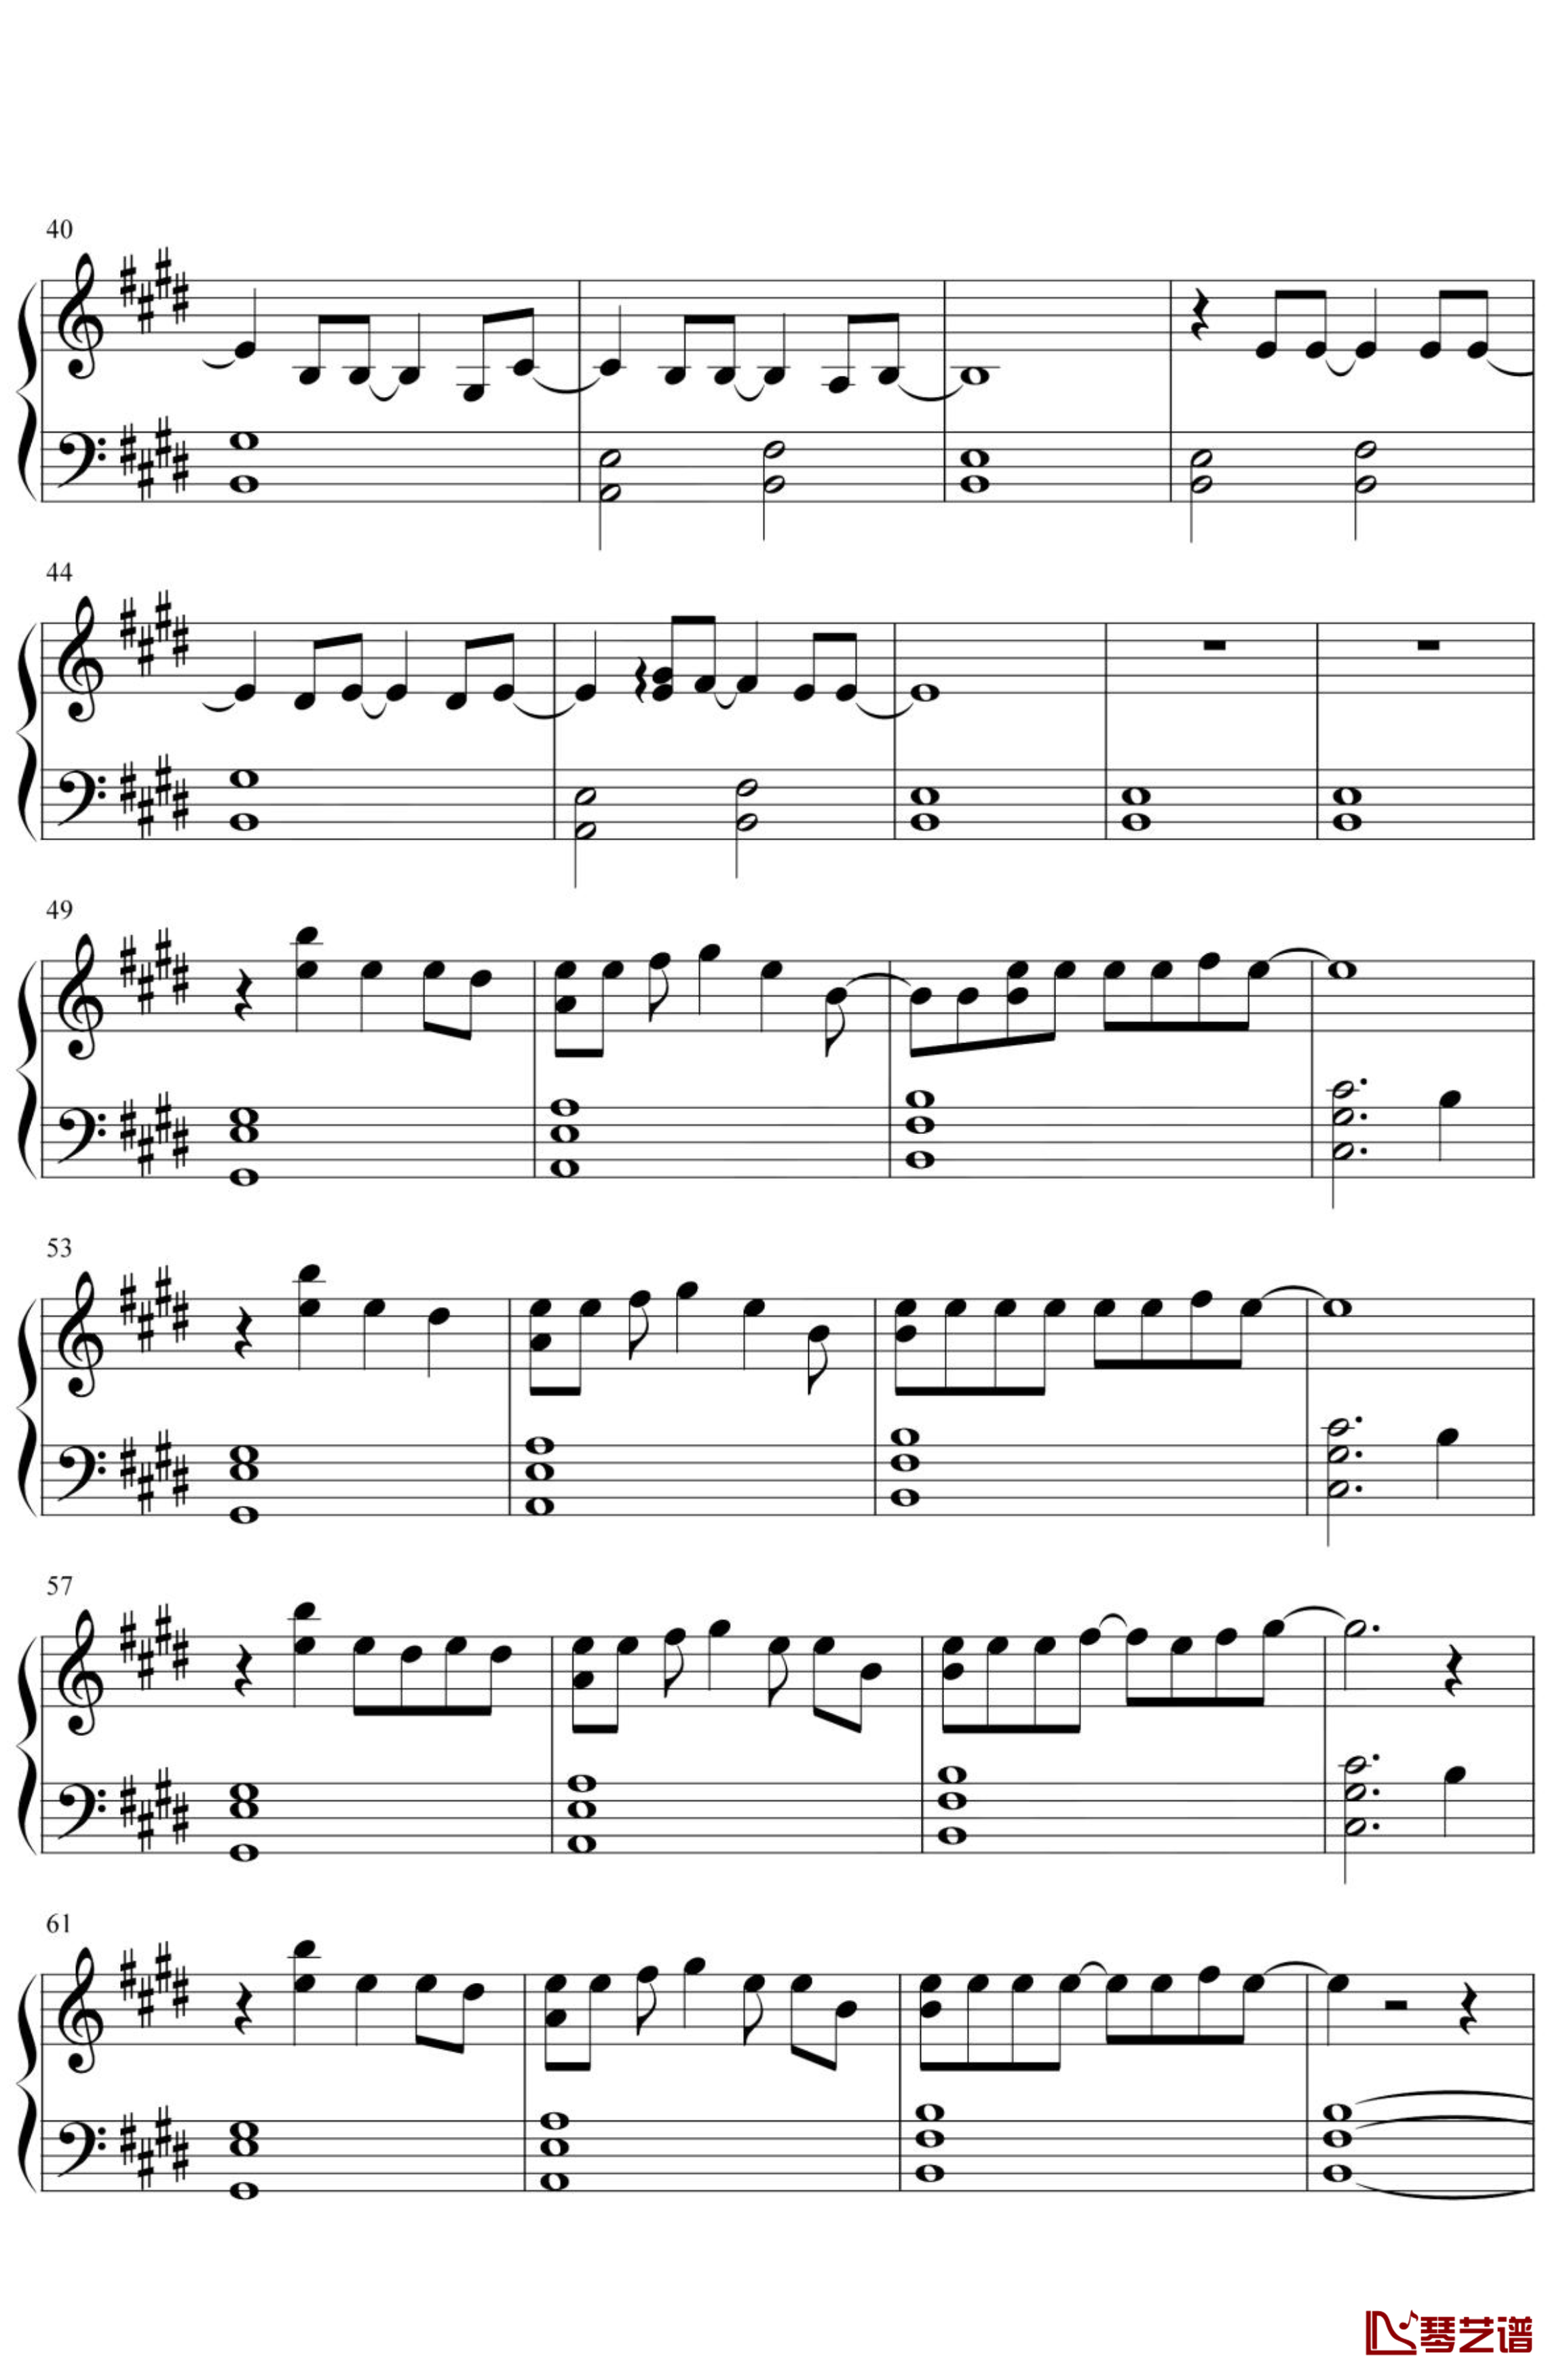 天气之子-グランドエスケープ钢琴谱 简化3